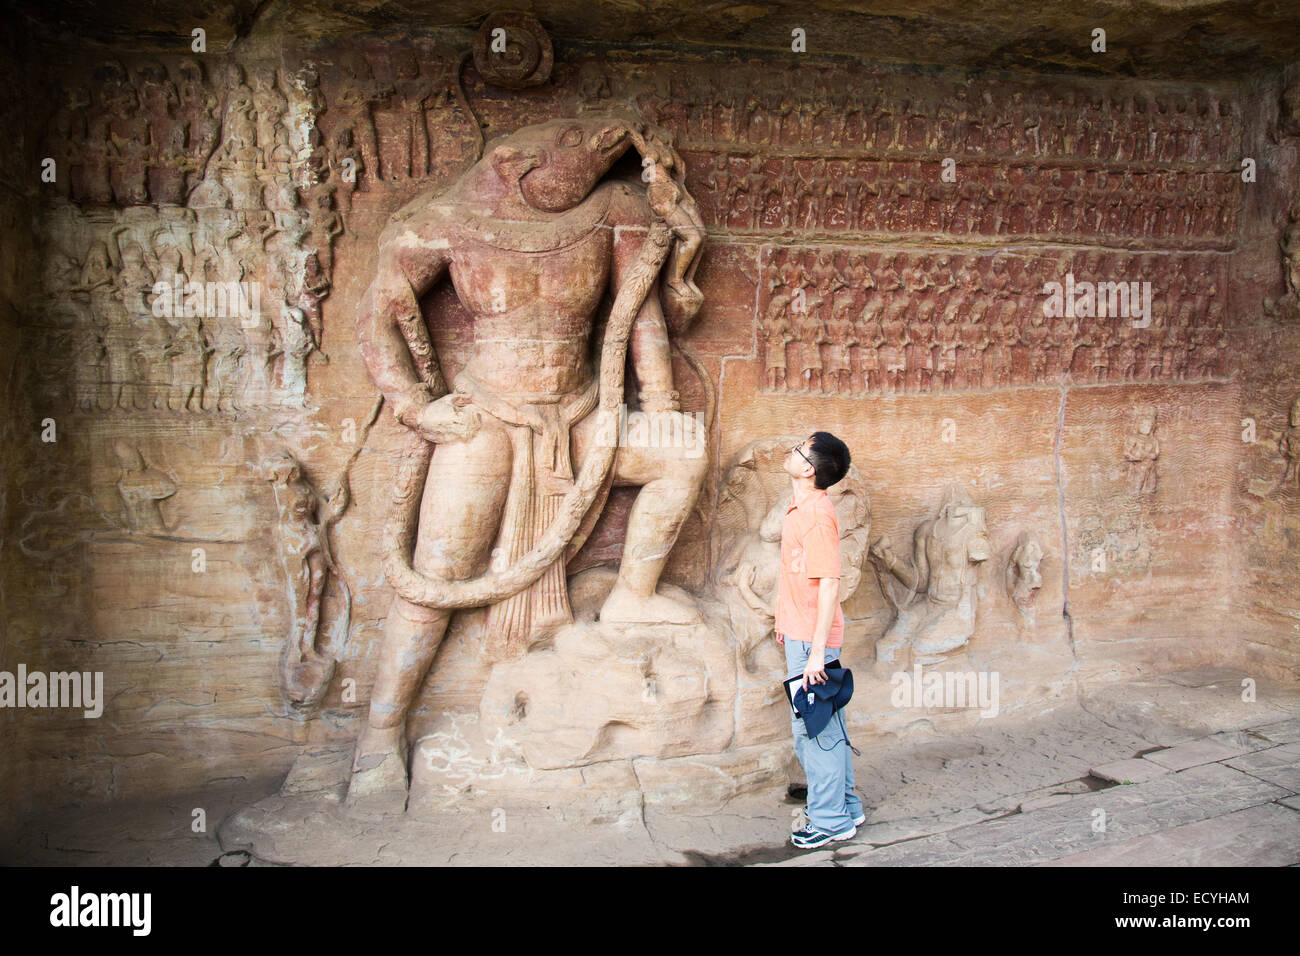 Cave 5, Vishnu as Varaha Avatar, Udayagiri caves near Sanchi, Madhya Pradesh, India Stock Photo